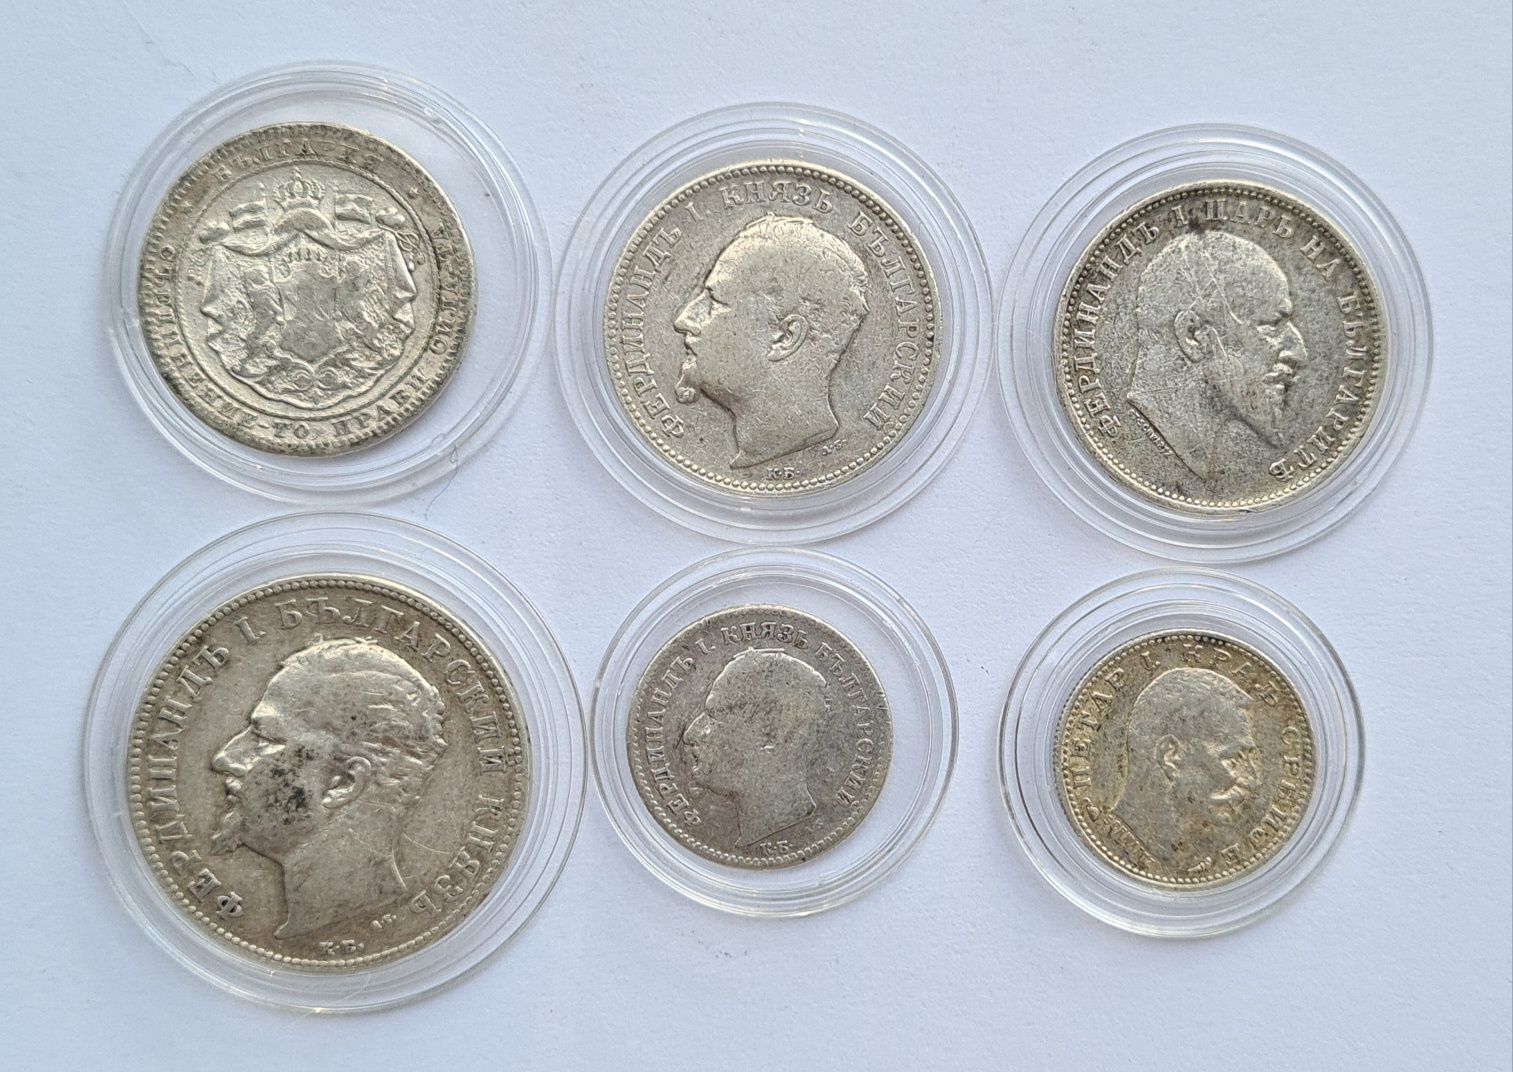 Български сребърни монети